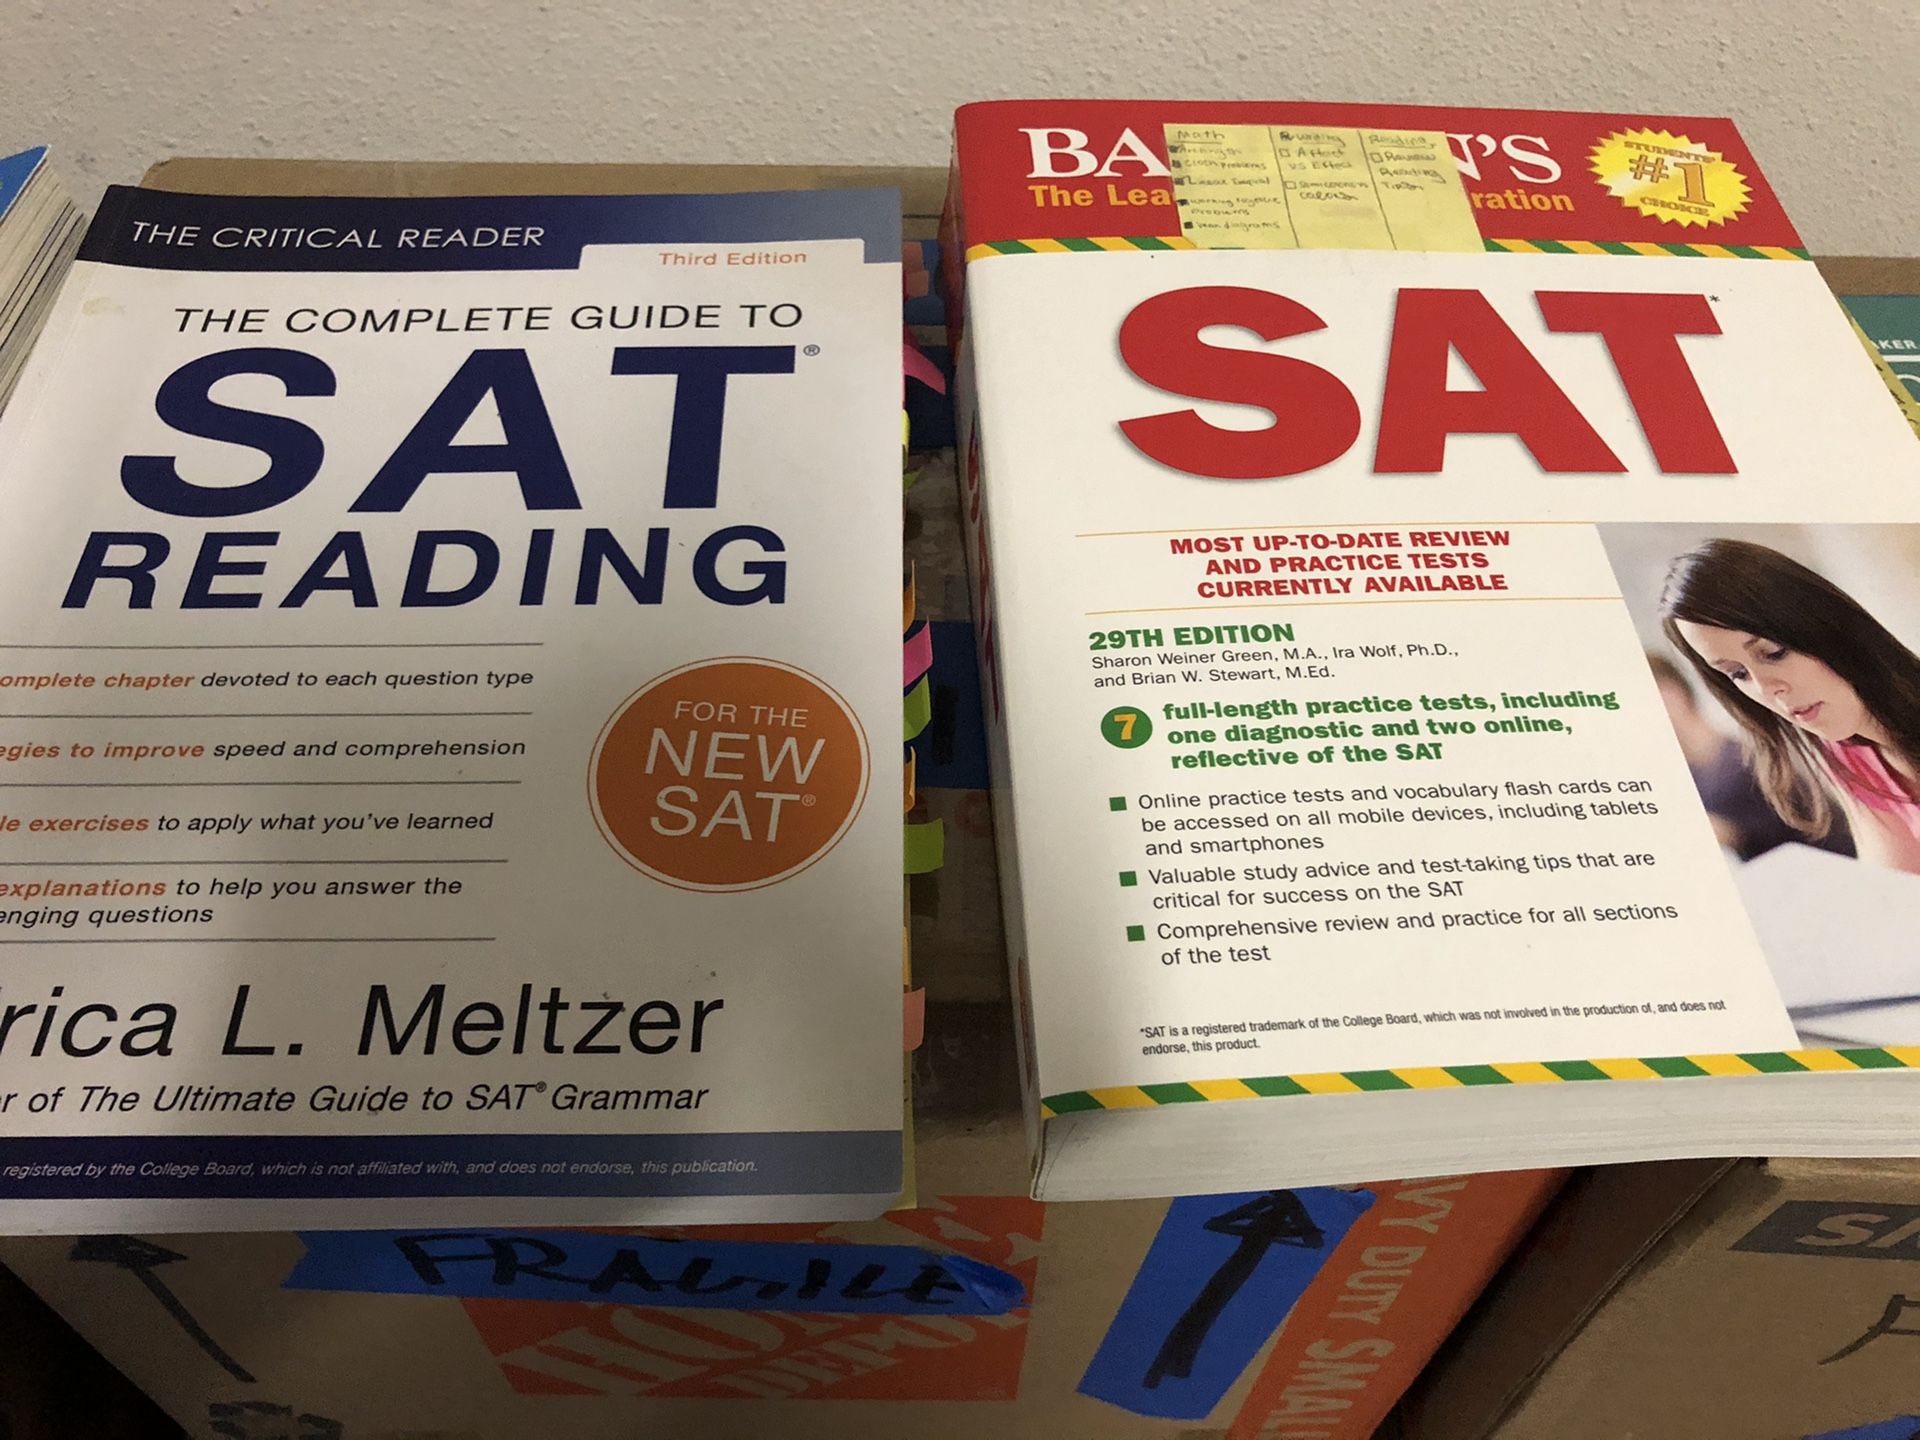 SAT , SAT subject , ACT, PSAT books